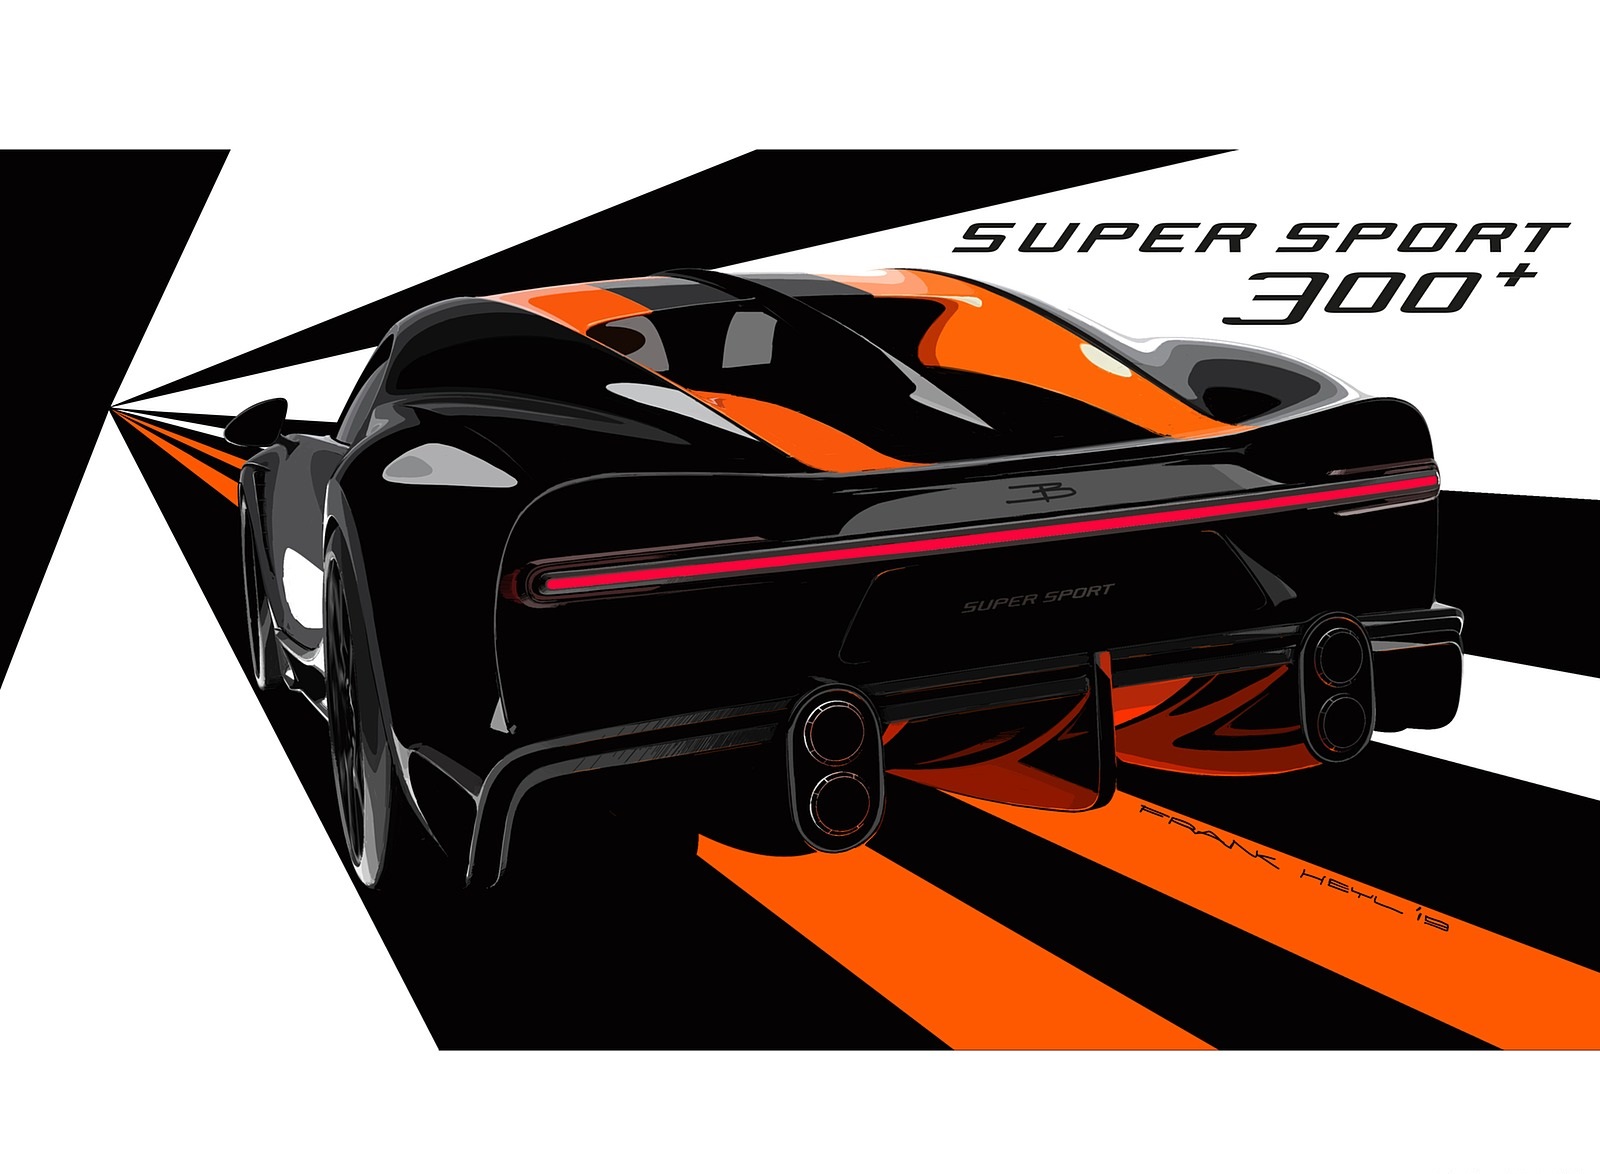 2021 Bugatti Chiron Super Sport 300+ Design Sketch Wallpapers #20 of 31